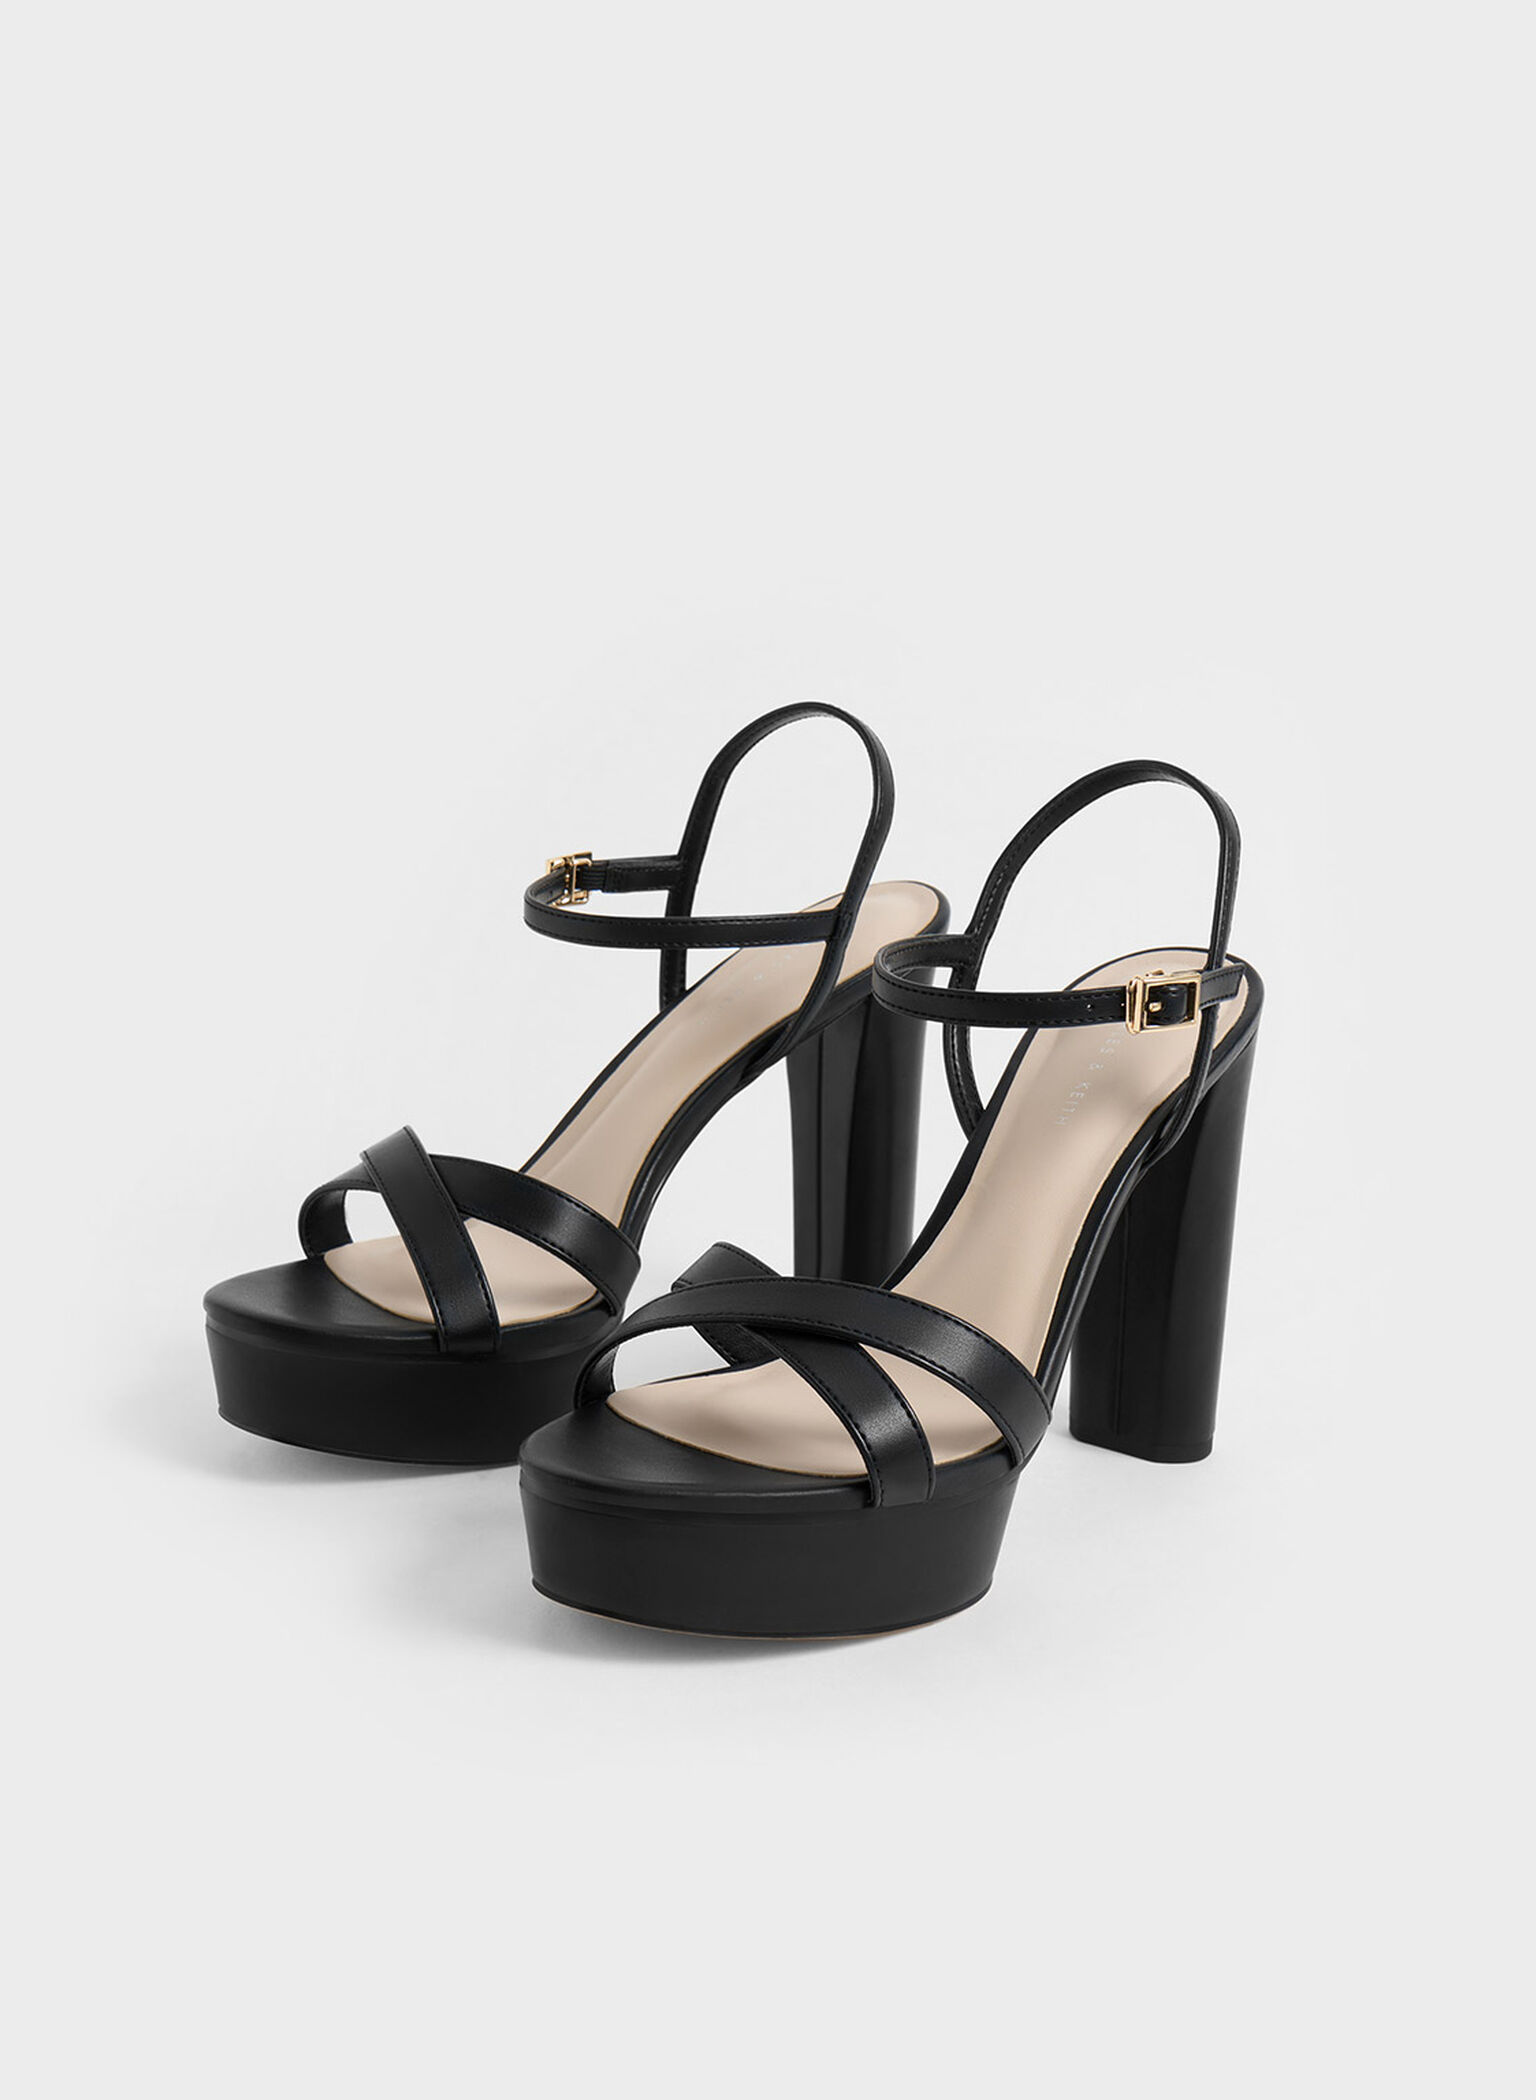 Black Crossover Platform Heeled Sandals - CHARLES & KEITH SG